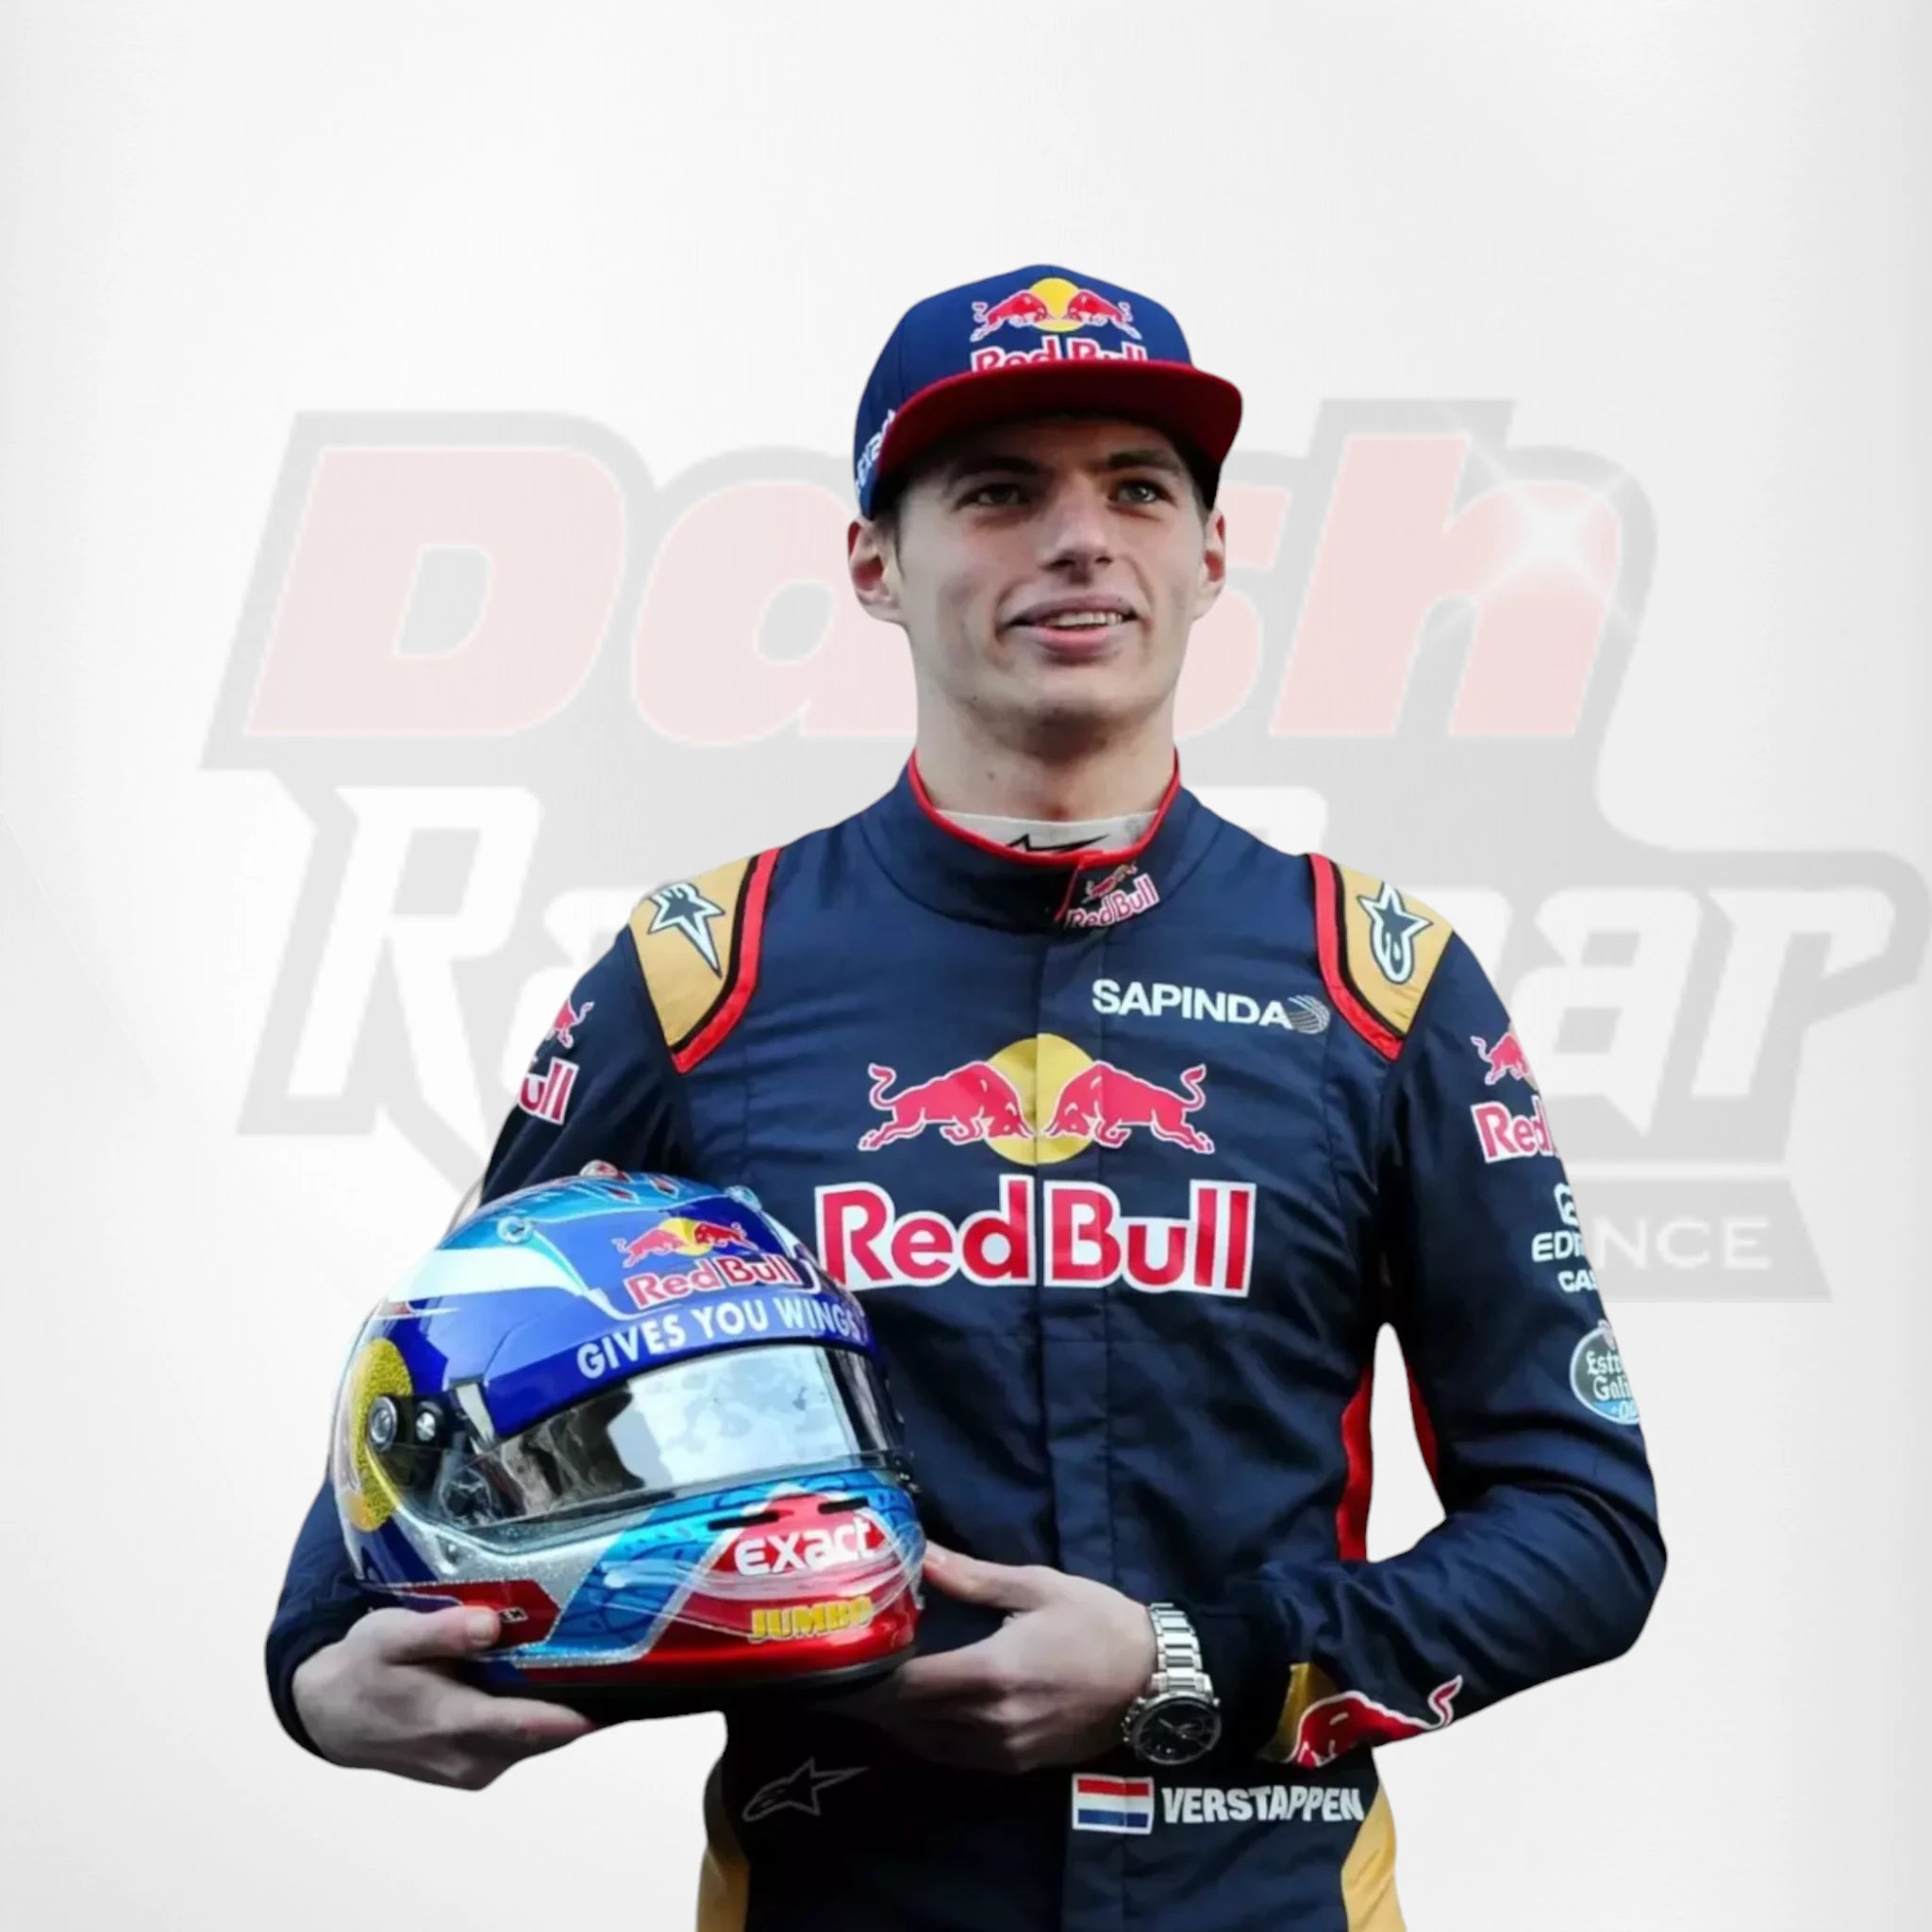 2015 Red Bull Max Verstappen F1 Race Suit